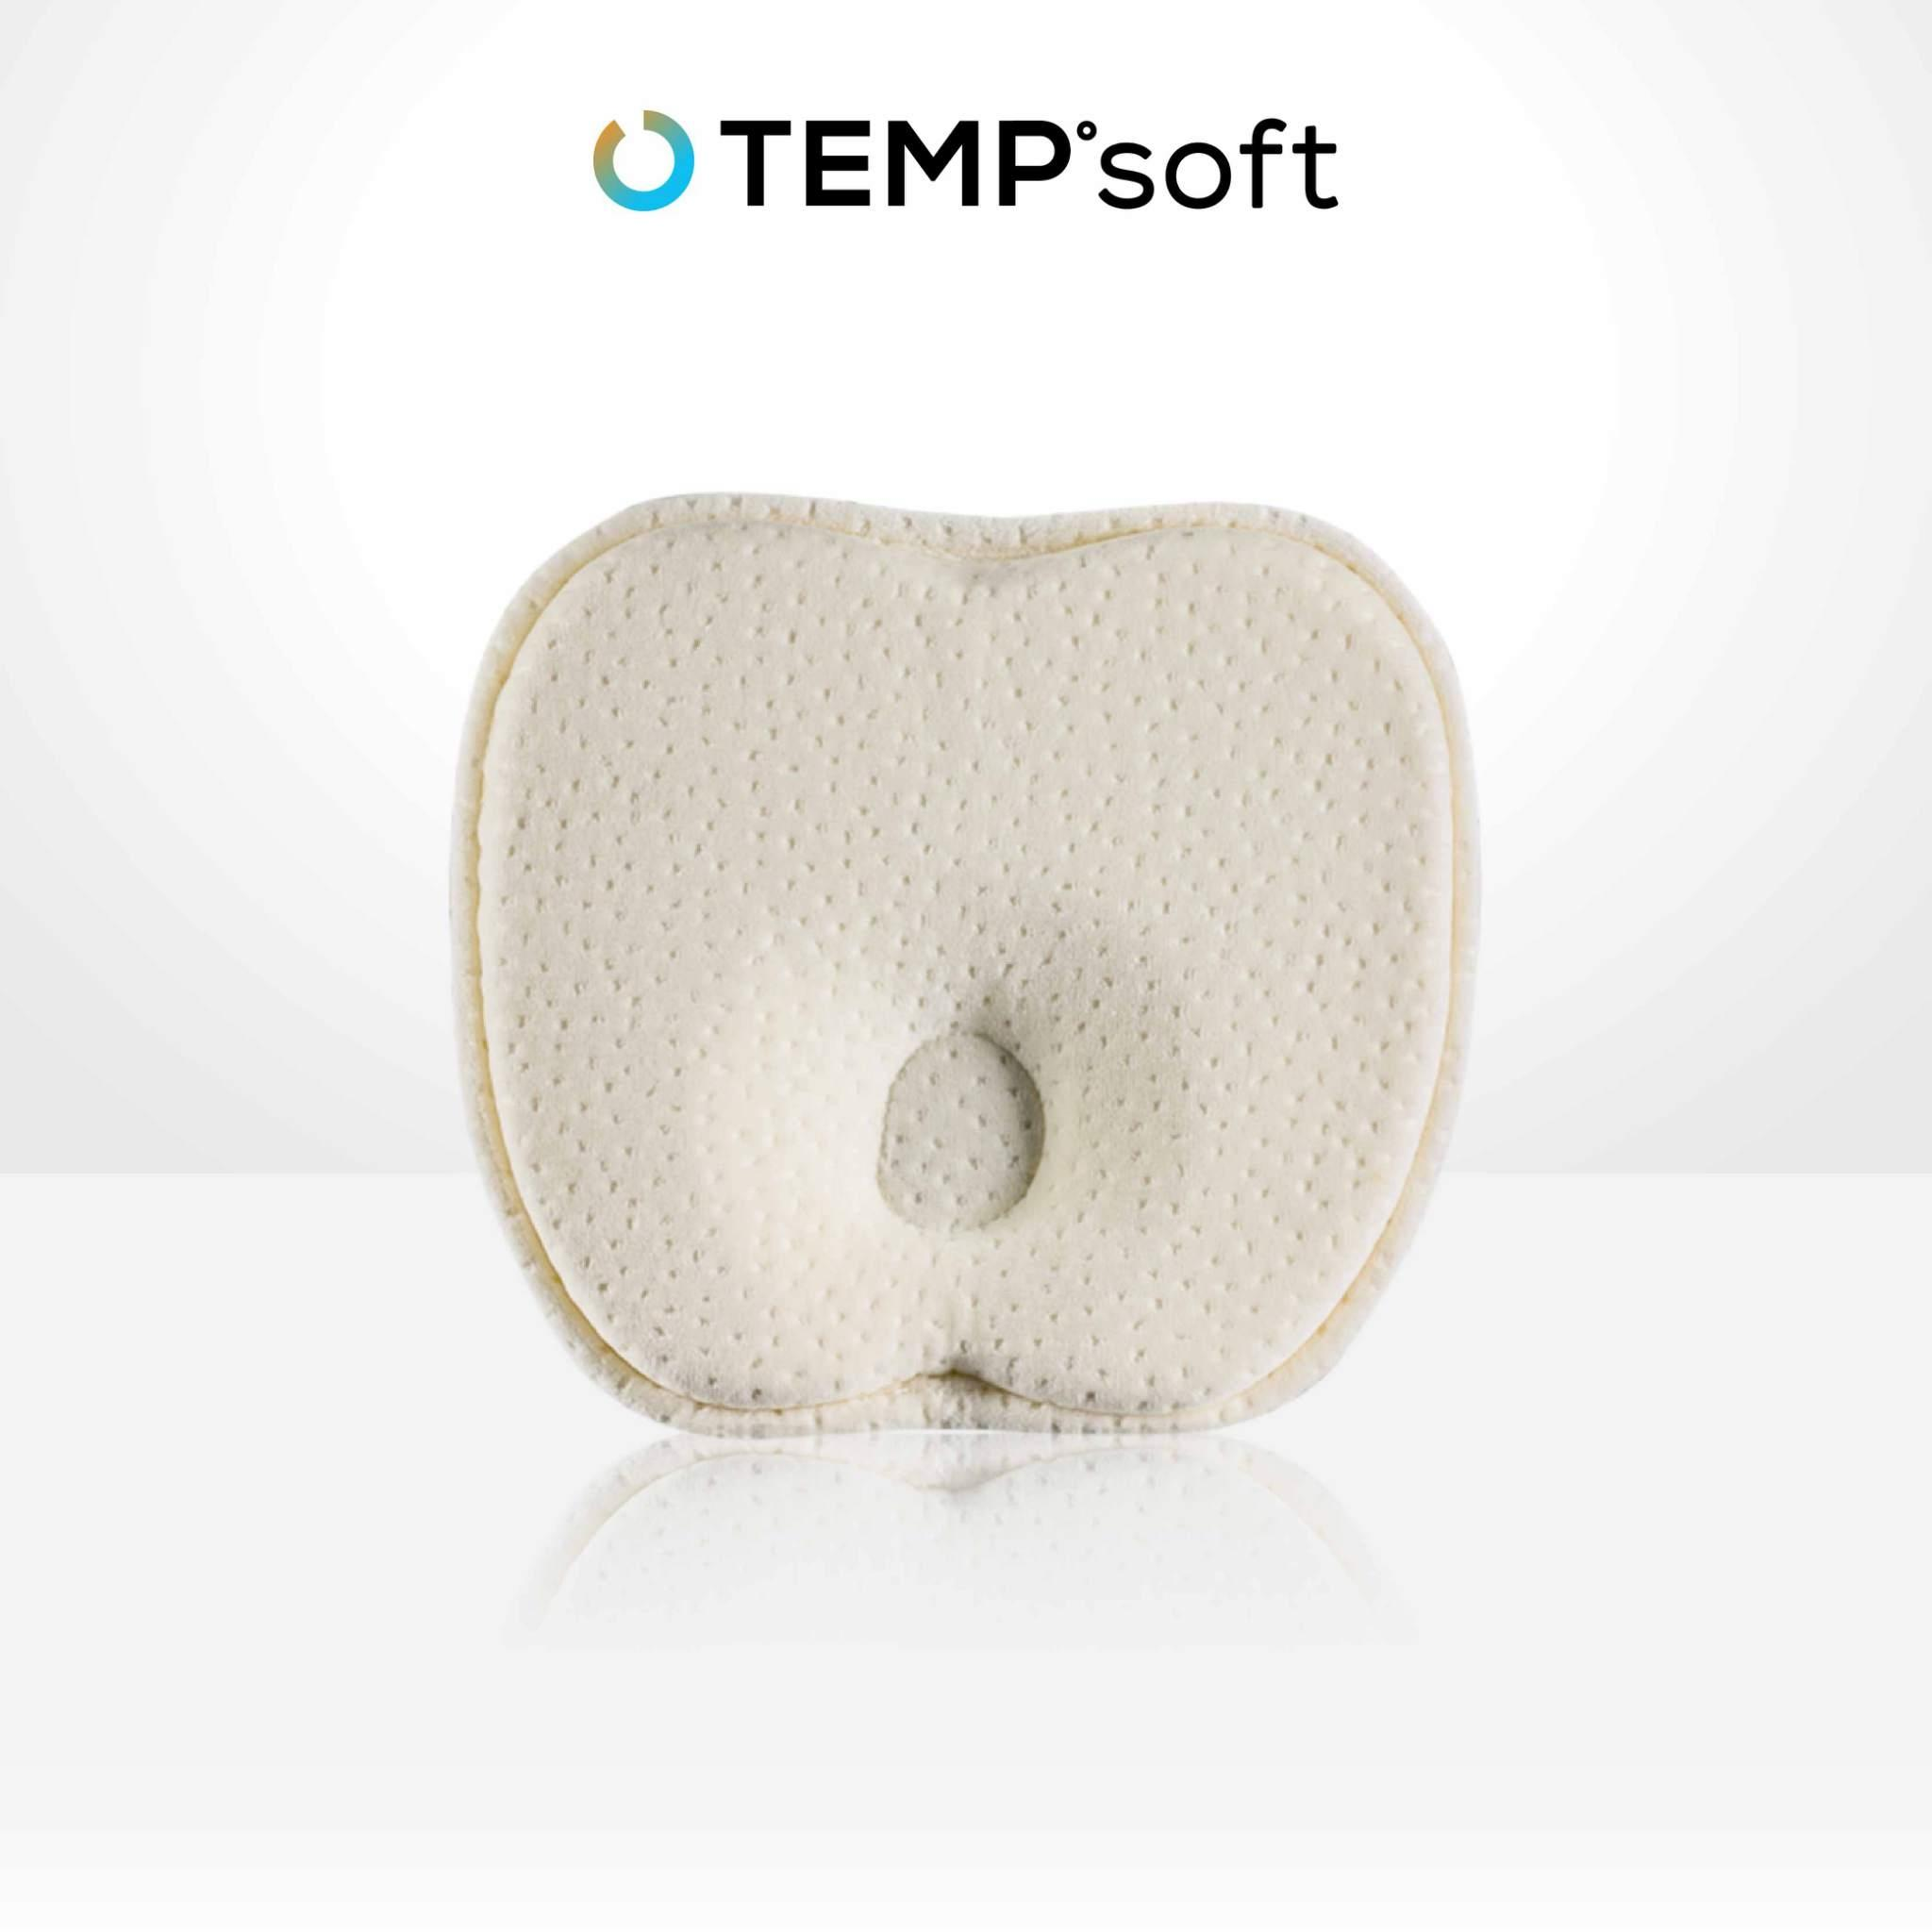 ซื้อที่ไหน CHERISH หมอน Tempsoft สำหรับเด็กแรกเกิด (Infant Tempsoft Pillow) รูปทรงแอปเปิ้ล